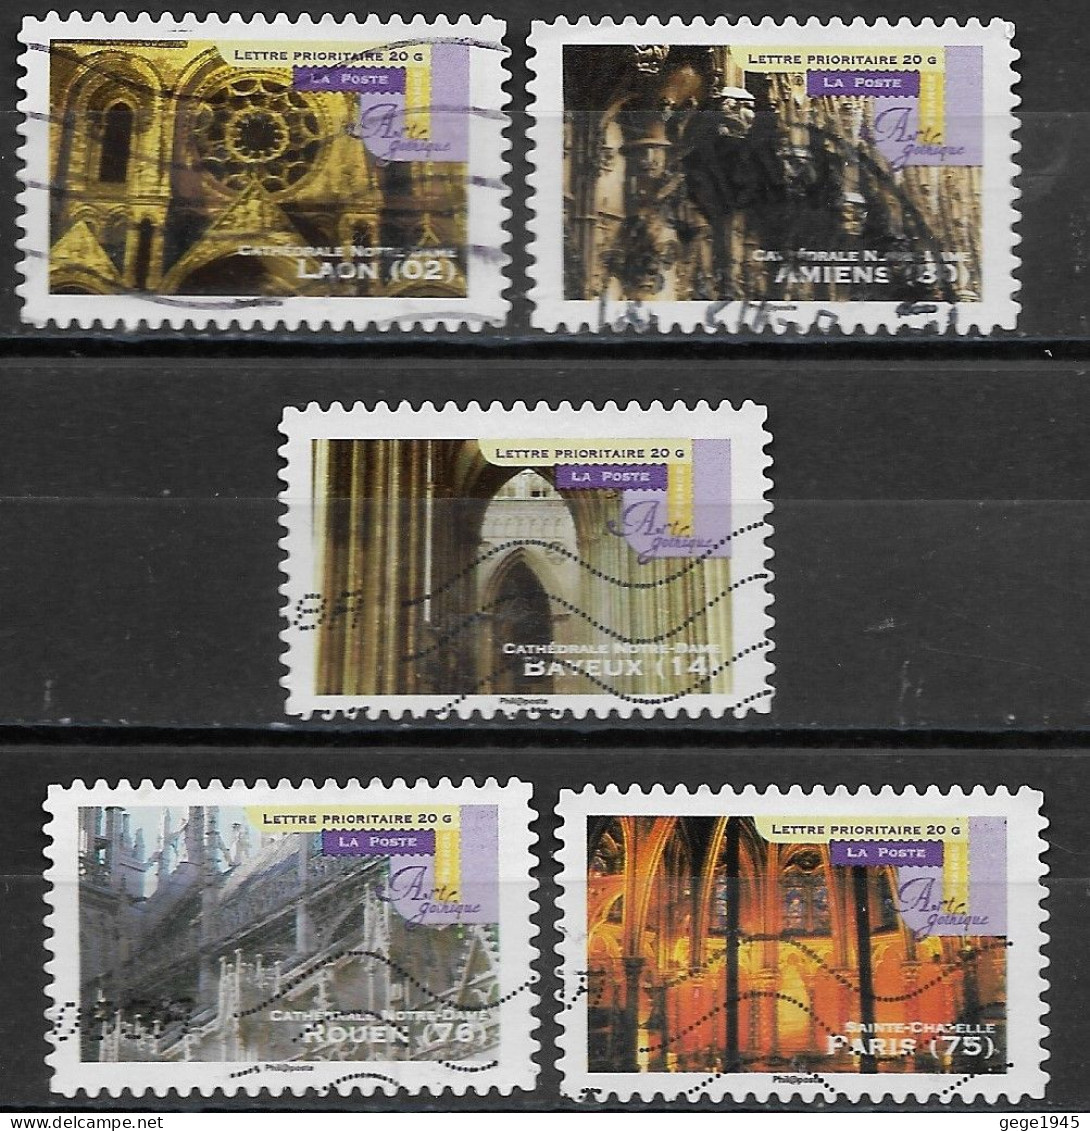 France 2011 Oblitéré Autoadhésif  N°  554 - 559 - 560 - 561 - 563  -    Art Gothique  ( Détails Architecturaux ) - Used Stamps